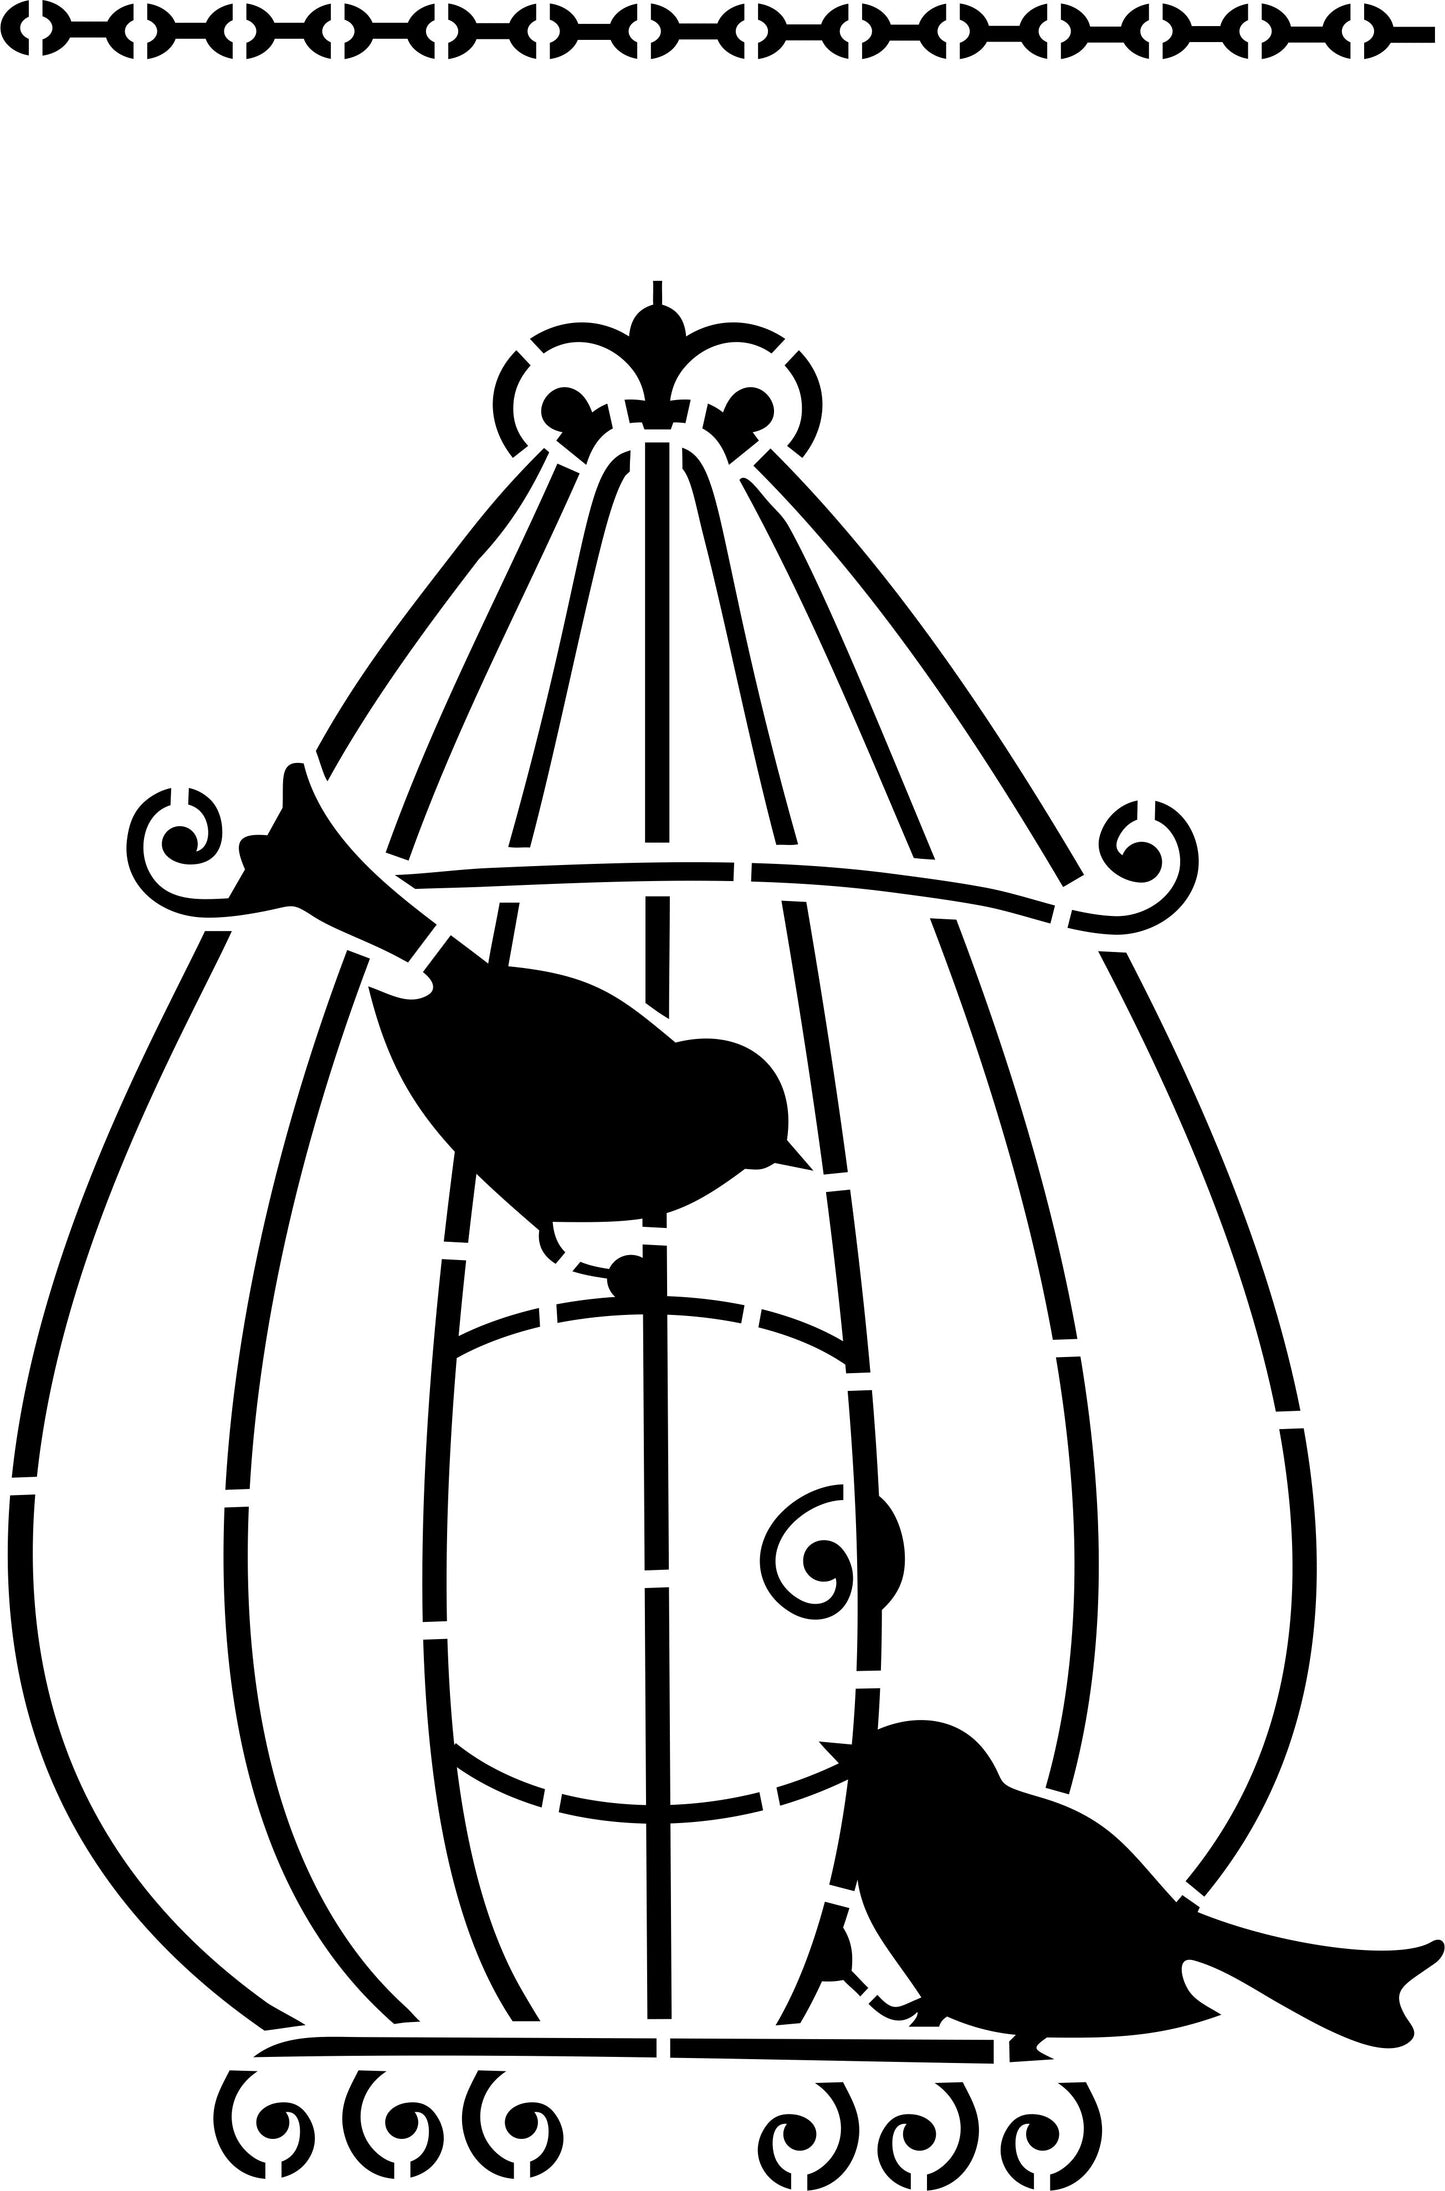 Birds in Cage Wall Design Stencil (KHS324)